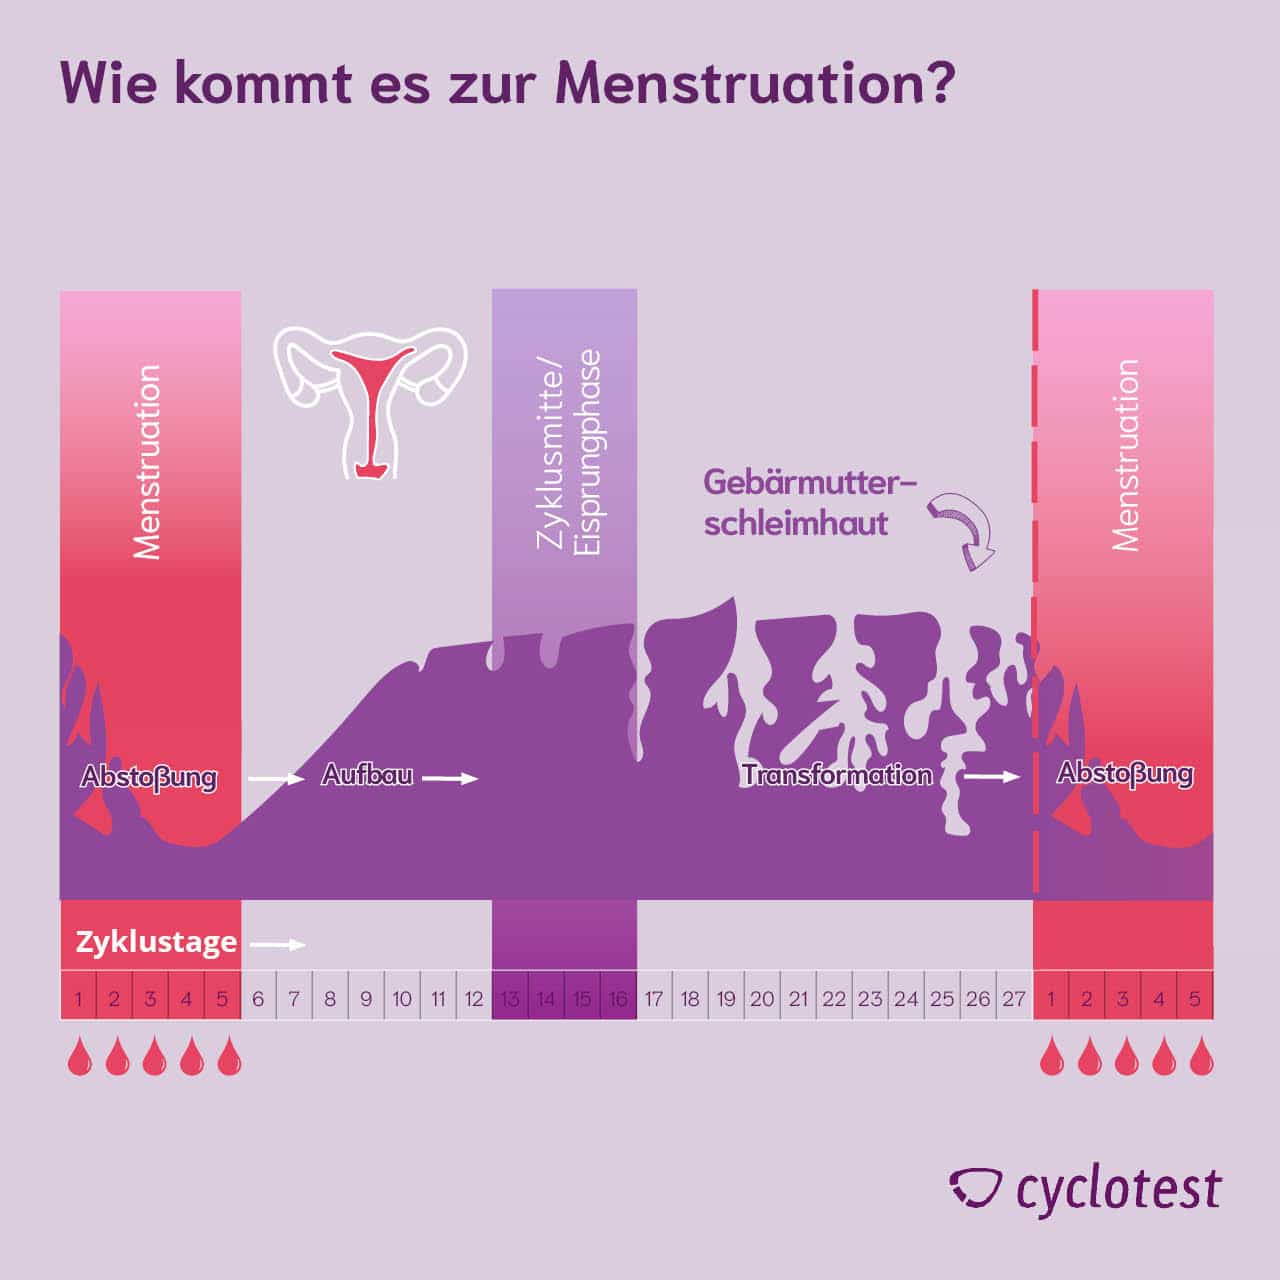 Die Grafik zeigt, wie sich sich die Gebärmutterschleimhaut im Laufe eines Zyklus verändert. Während der Menstruation wird aus der Gebärmutter Schleimhaut, Sekrete, Eizelle und Blut ausgeschieden.